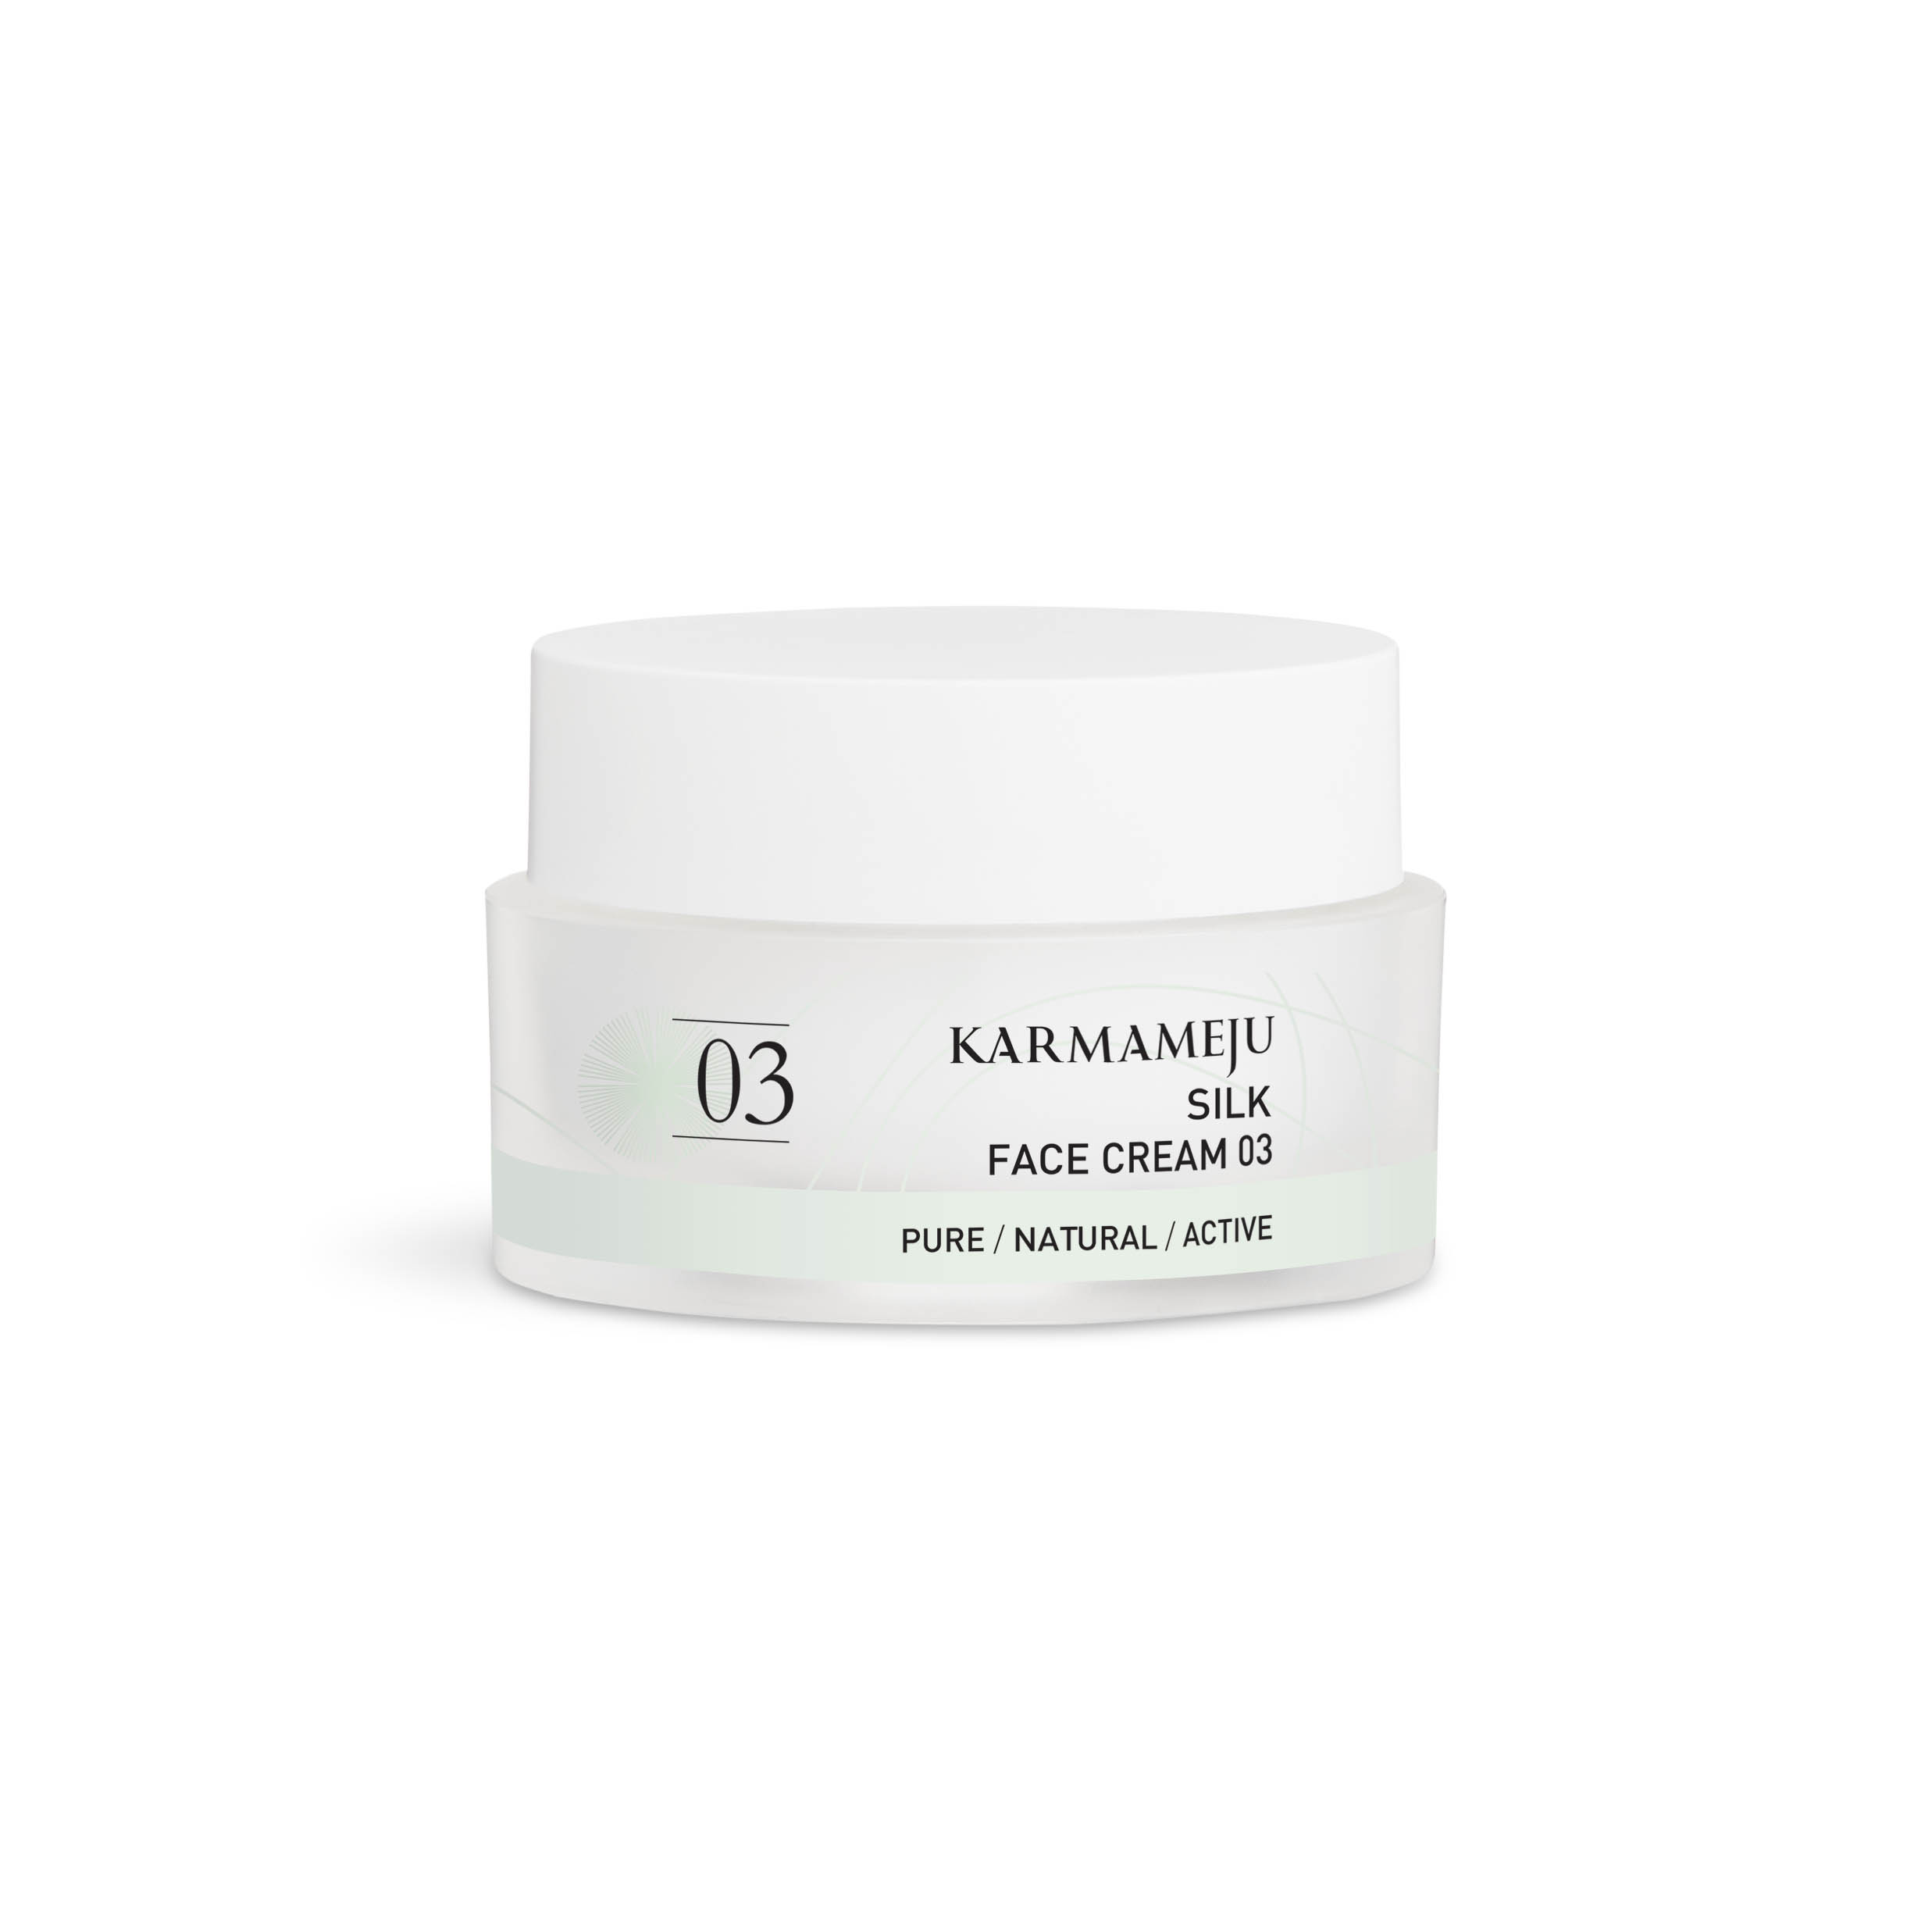 karmameju – silk face cream 03 50ml